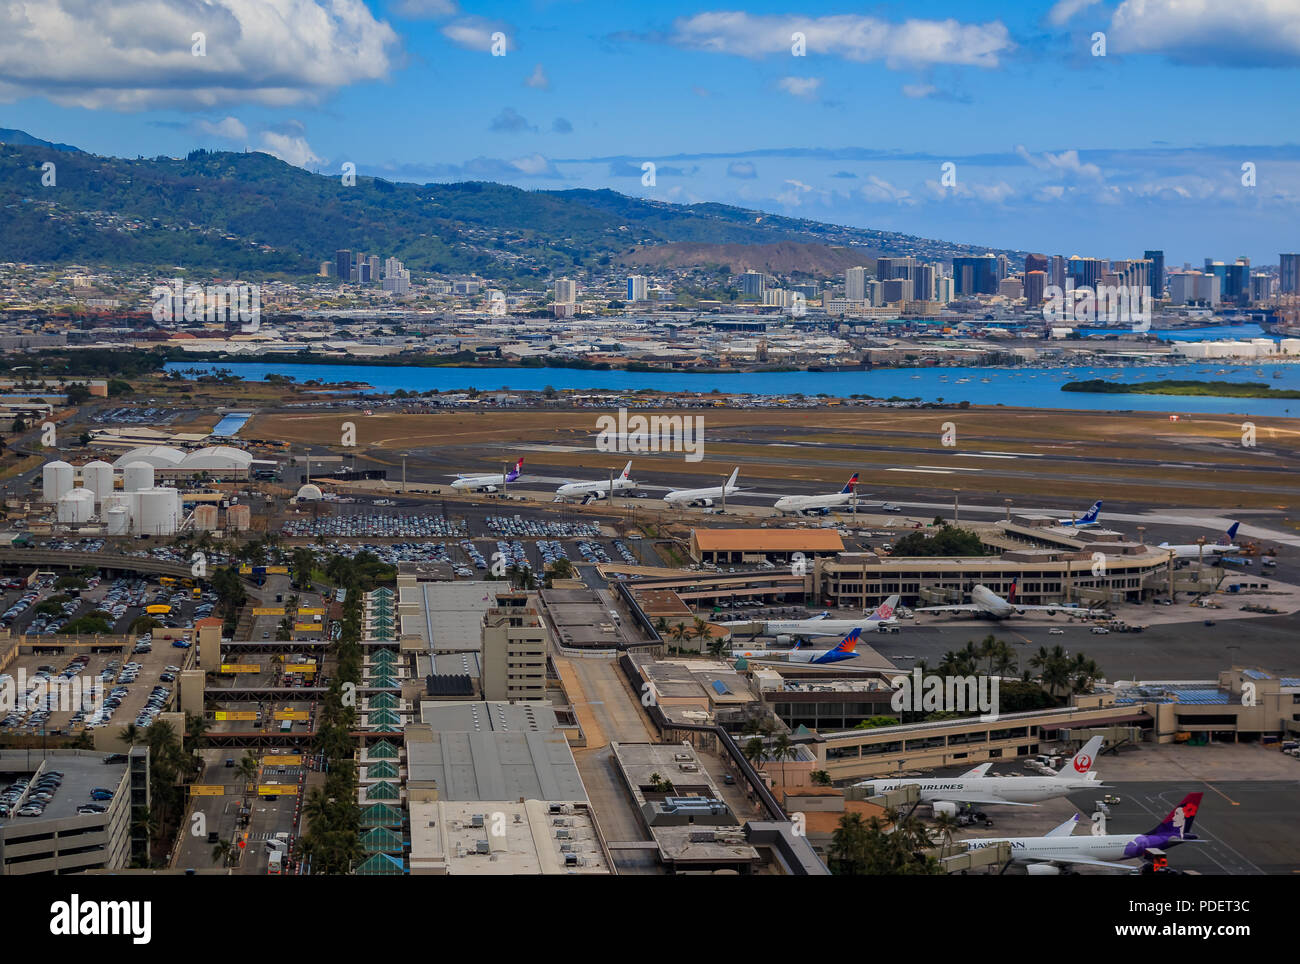 Honolulu, Hawaii, USA - 25 mai 2015 : Vue aérienne du centre-ville d'Honolulu et les avions en stationnement sur le domaine de l'Aéroport International Daniel K. Inouye HNL Banque D'Images